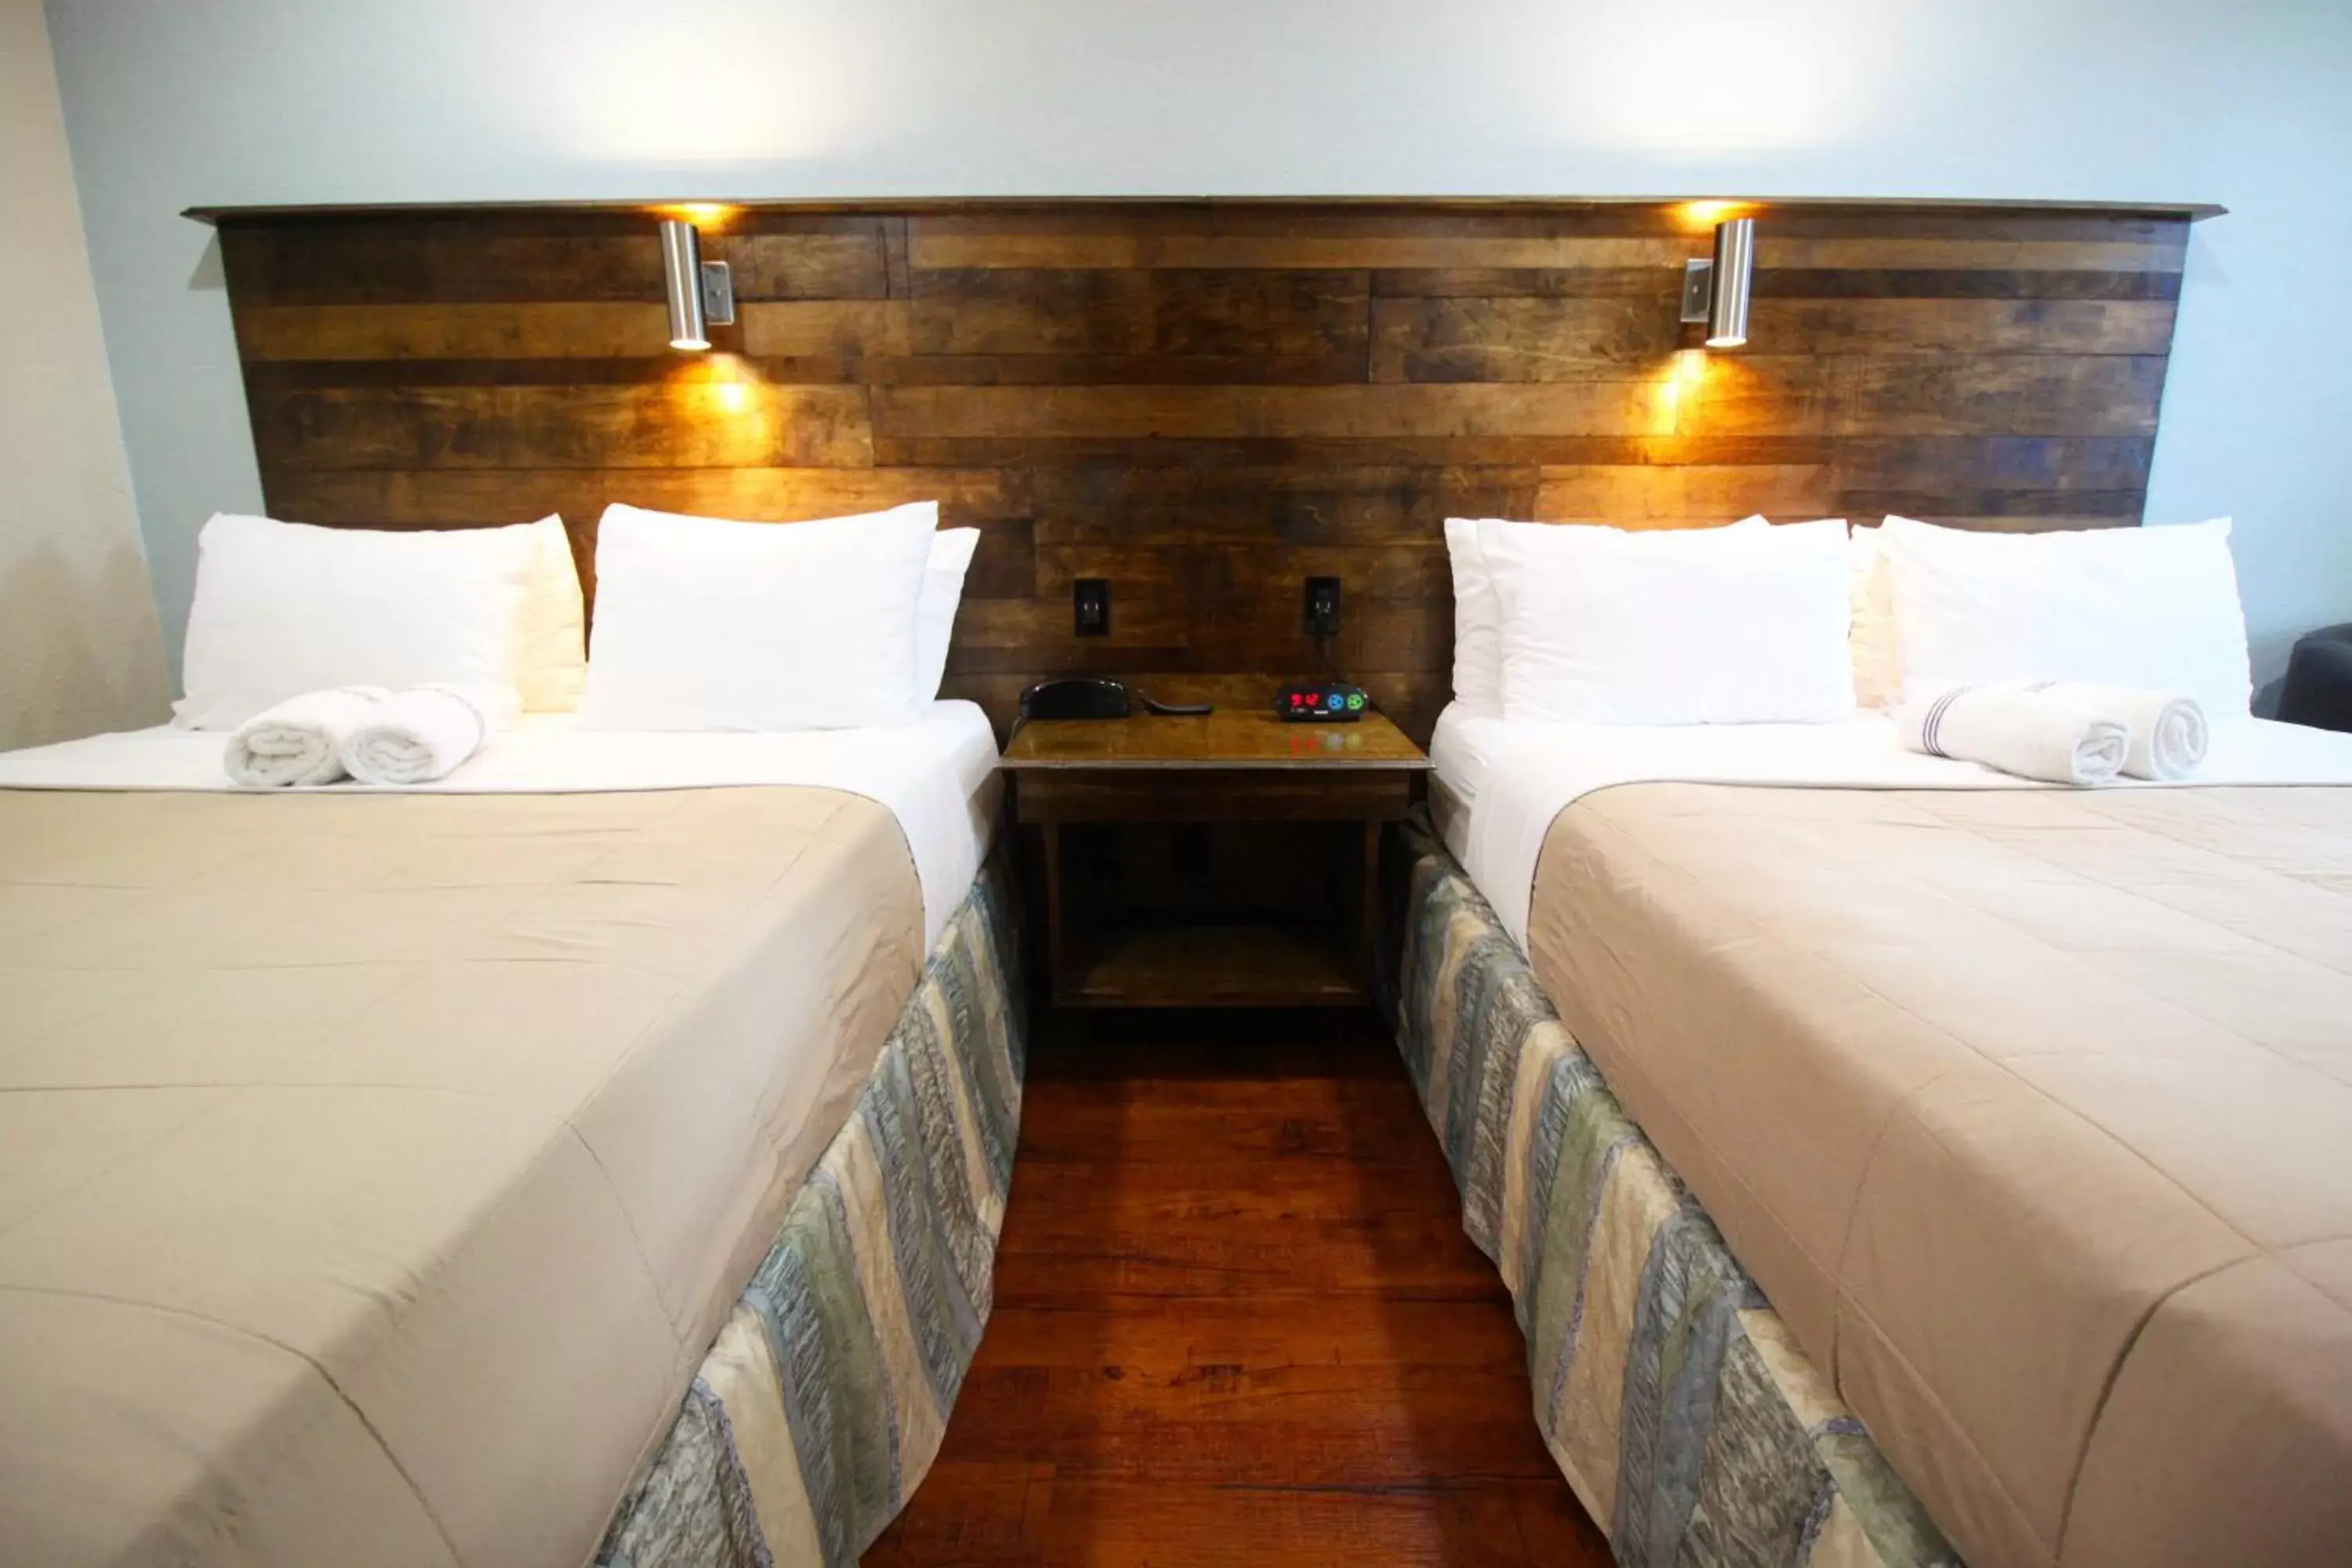 Bed in Southern Oaks Inn - Saint Augustine